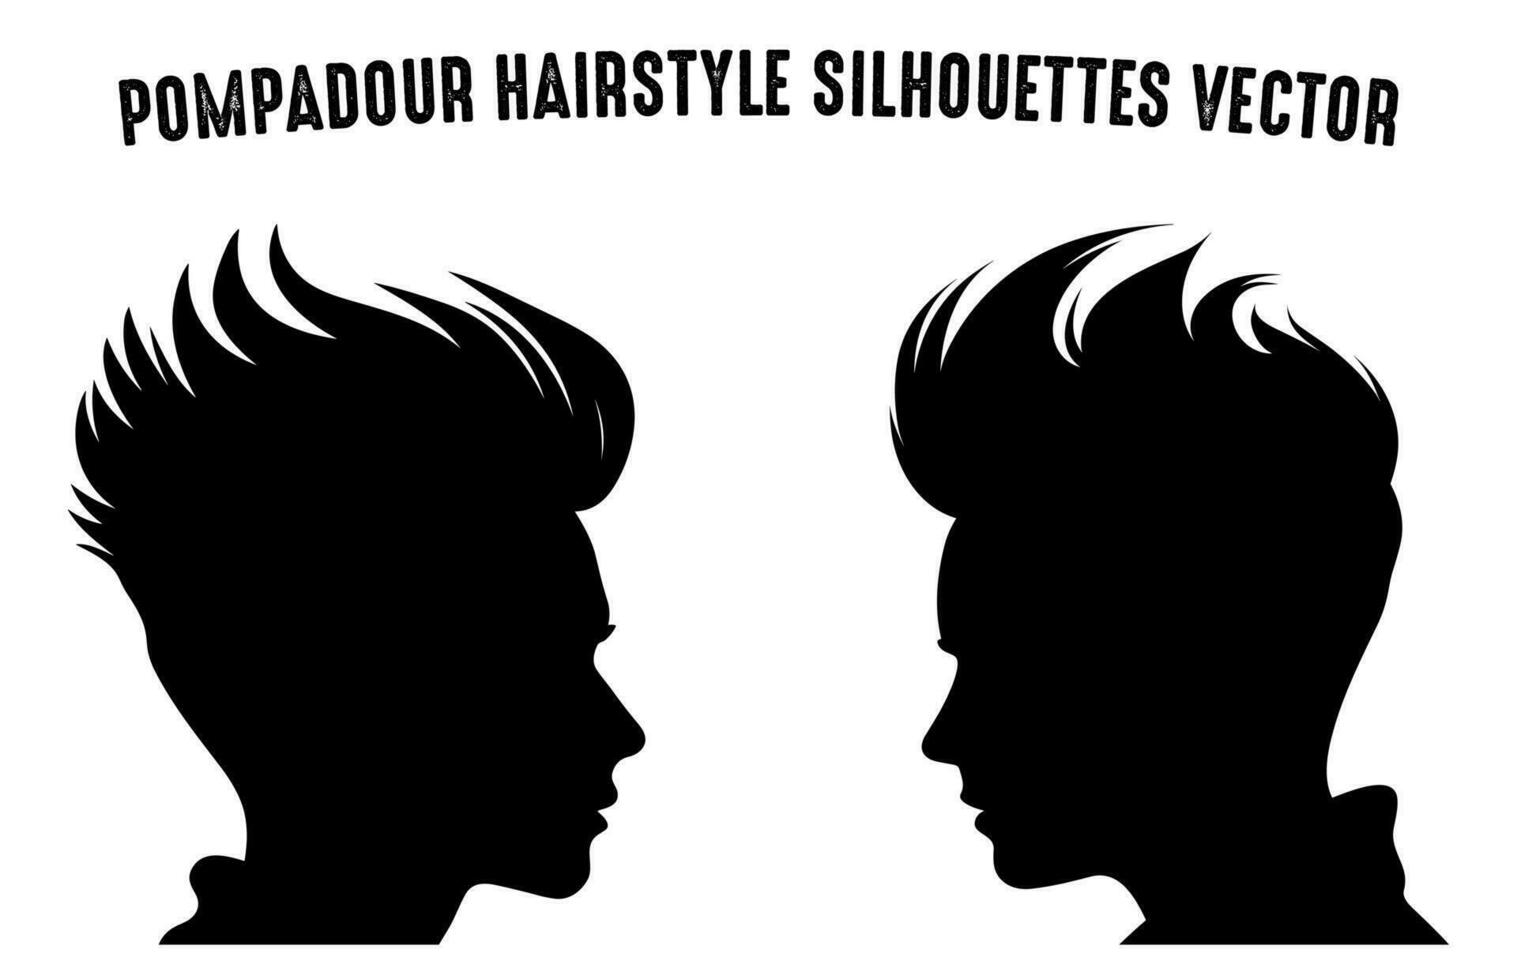 banane la Coupe de cheveux silhouette clipart empaqueter, Hommes cheveux Couper vecteur ensemble, branché élégant Masculin coiffure silhouettes gratuit